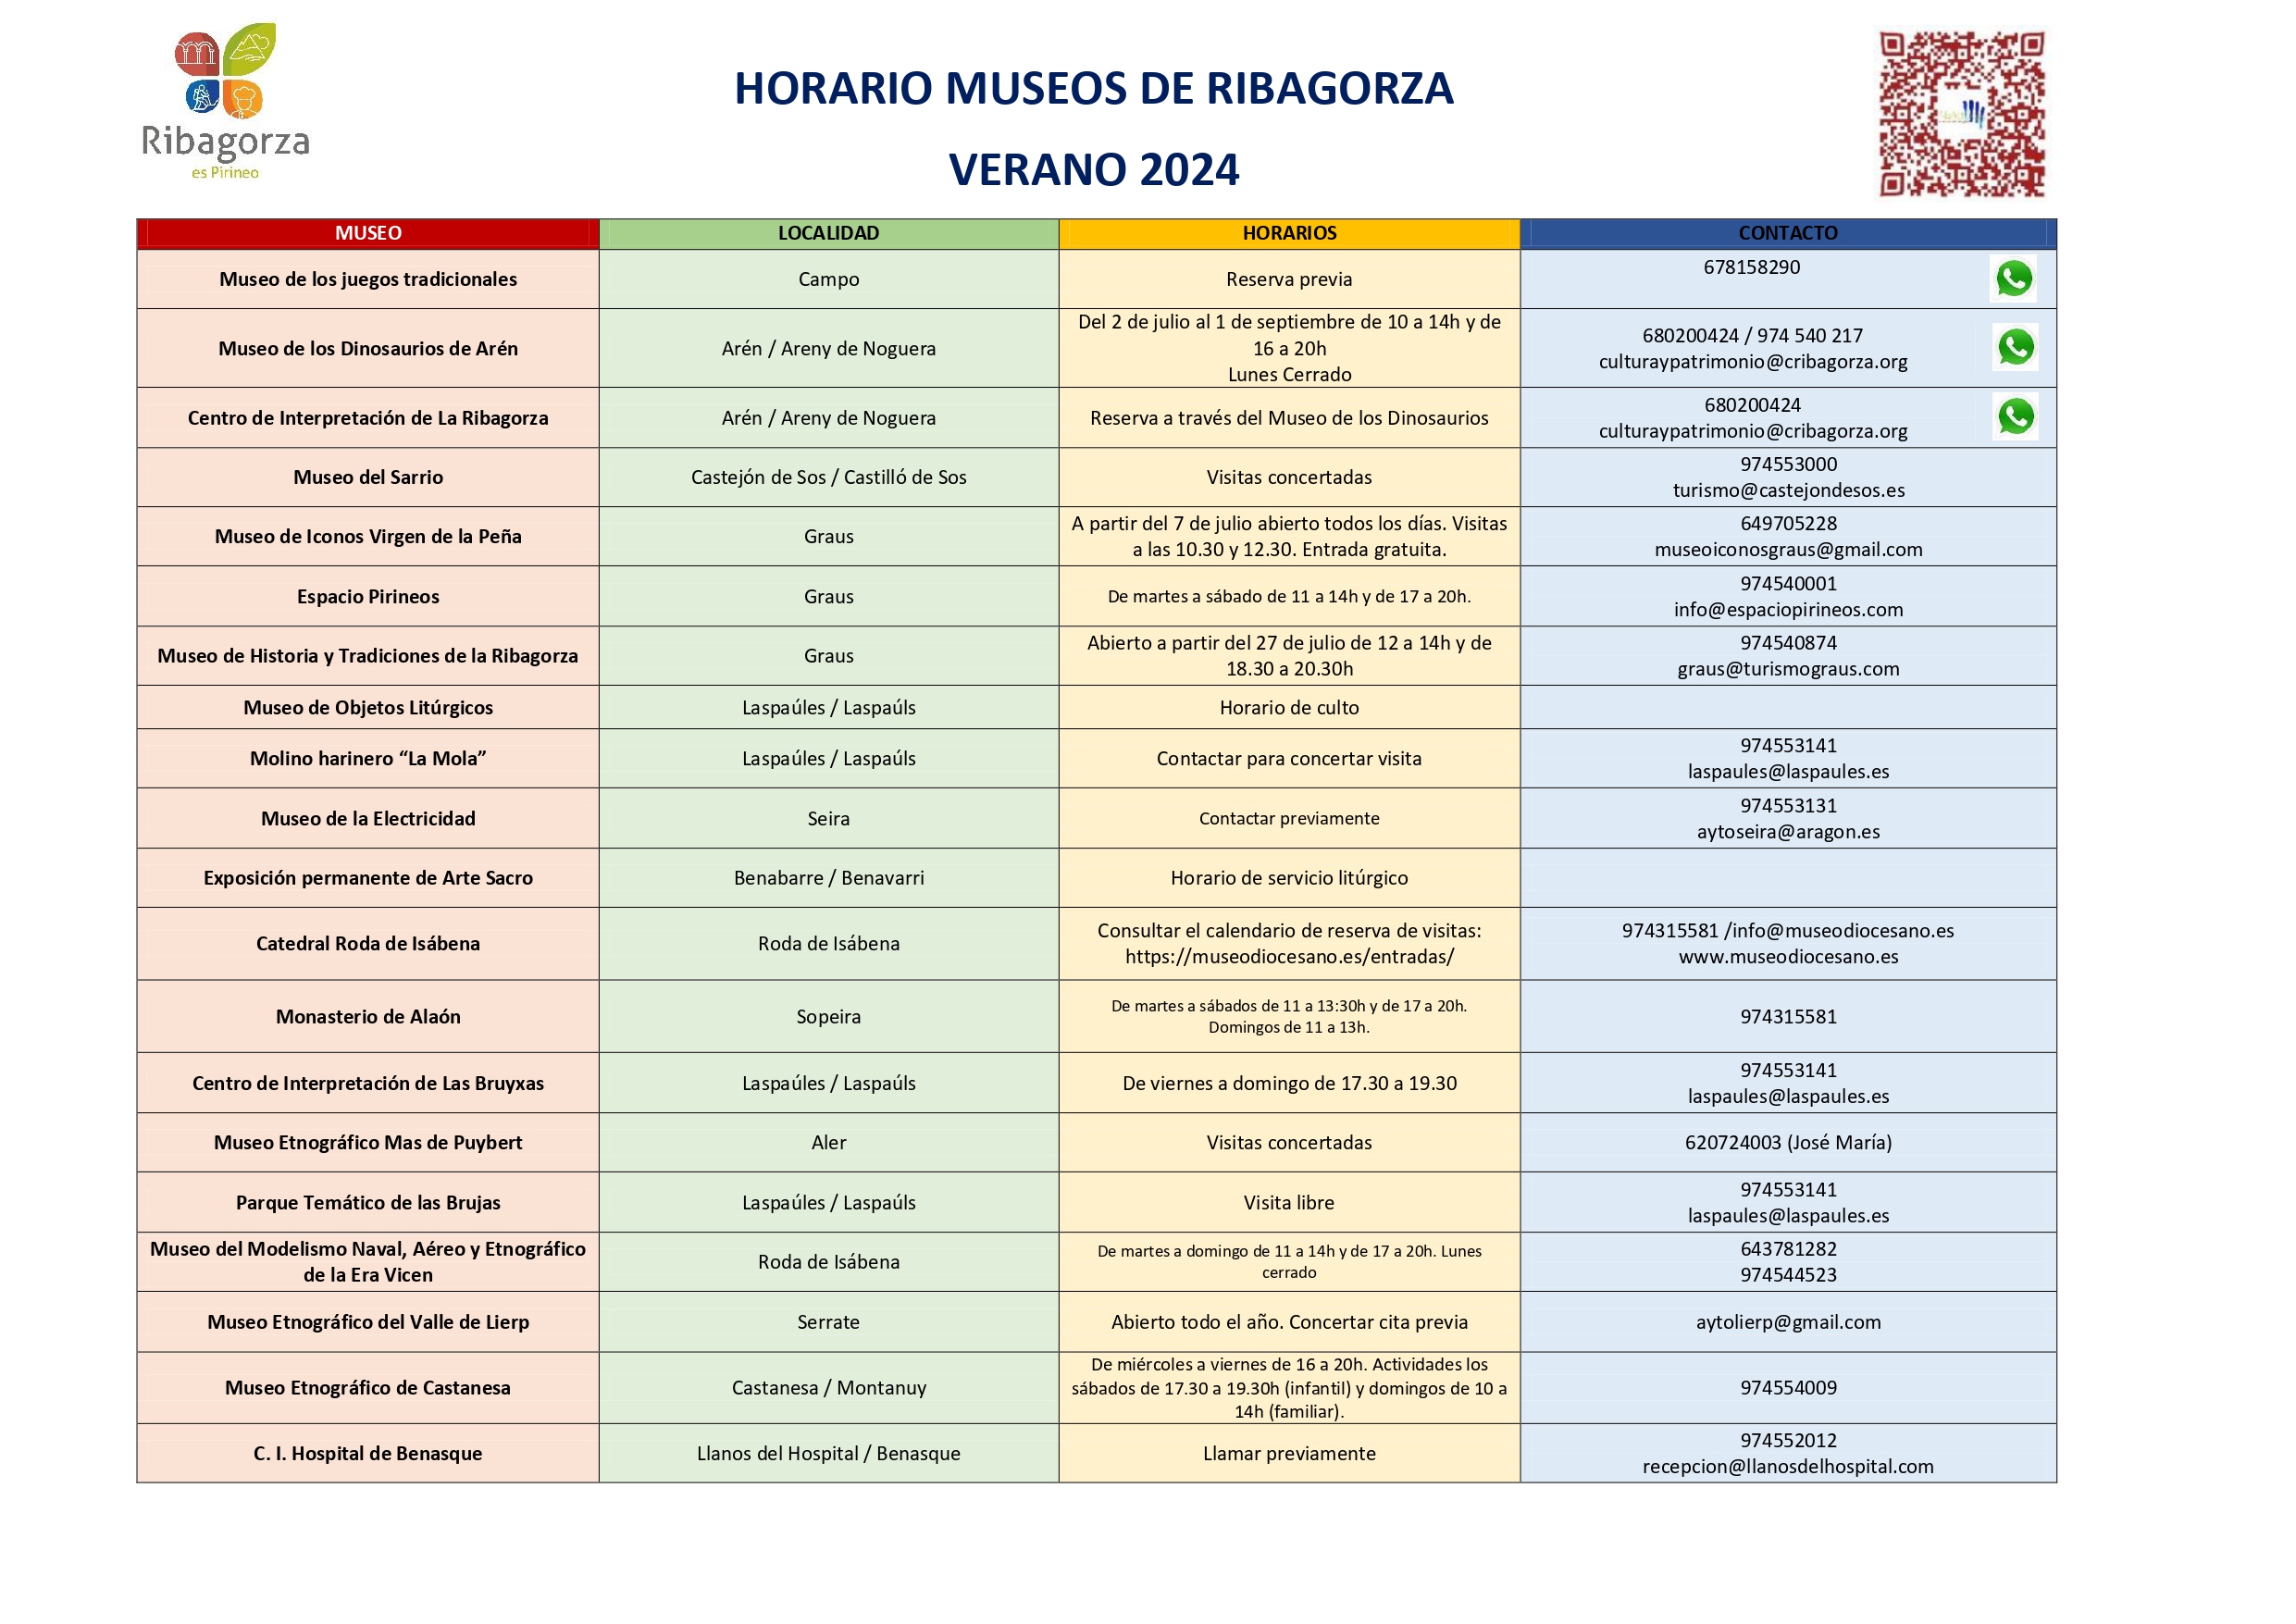 HORARIO MUSEOS DE LA RIBAGORZA Verano 2024 page 0001